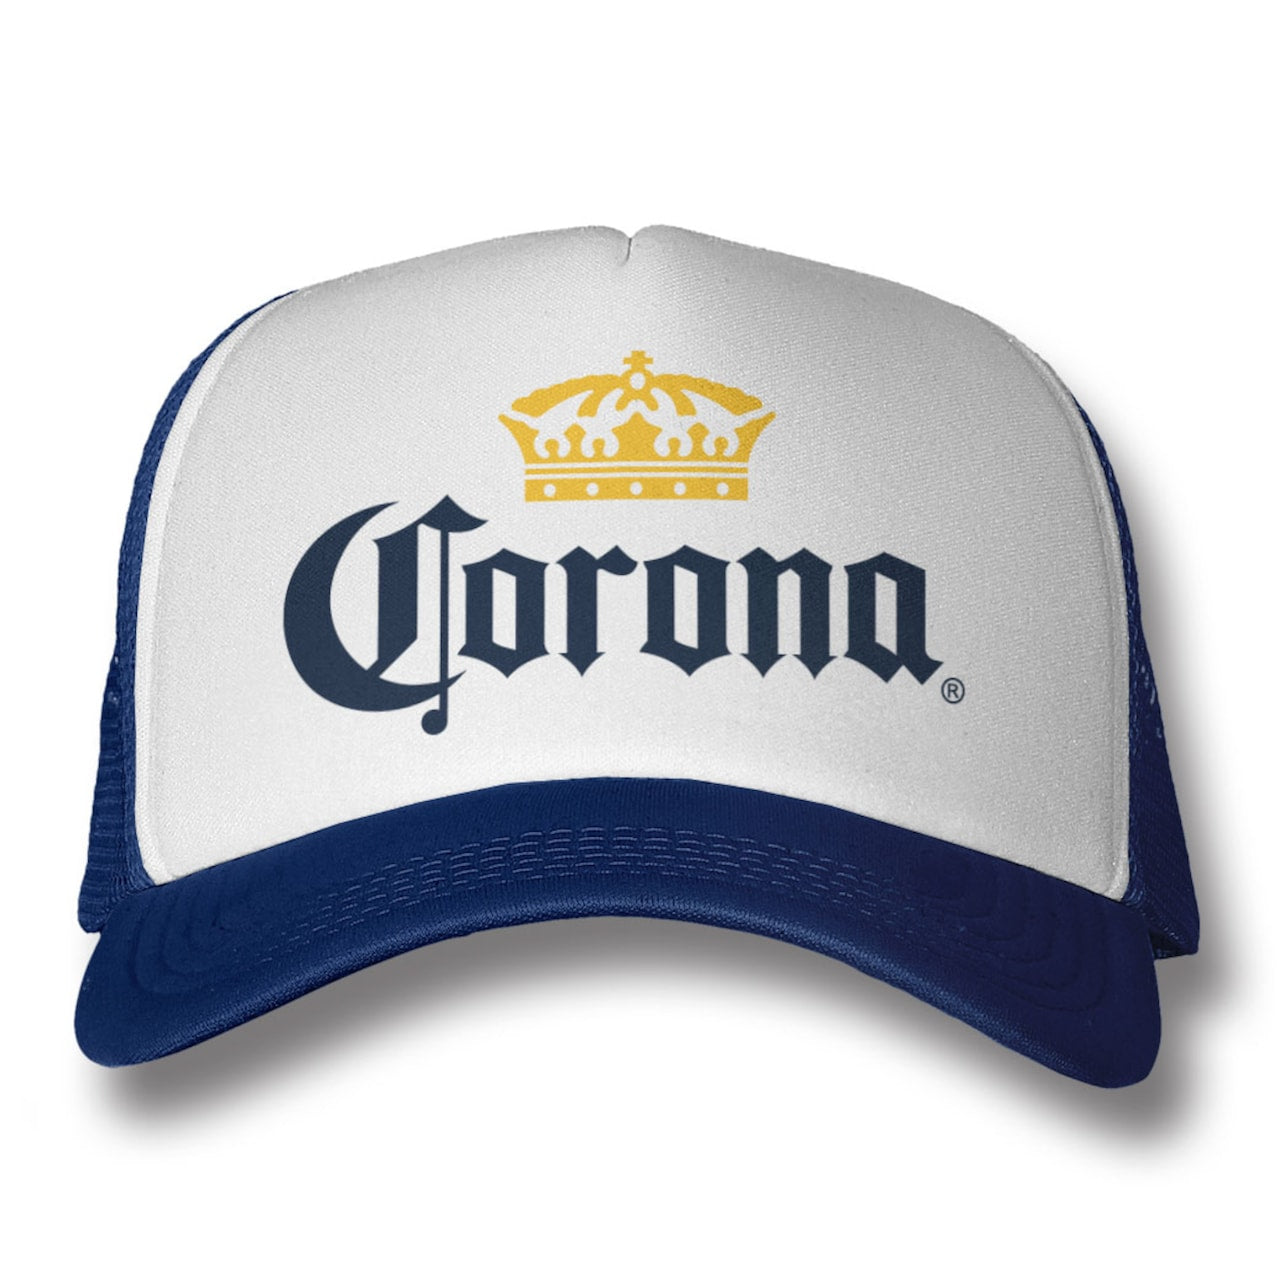 Corona Logo Trucker Cap